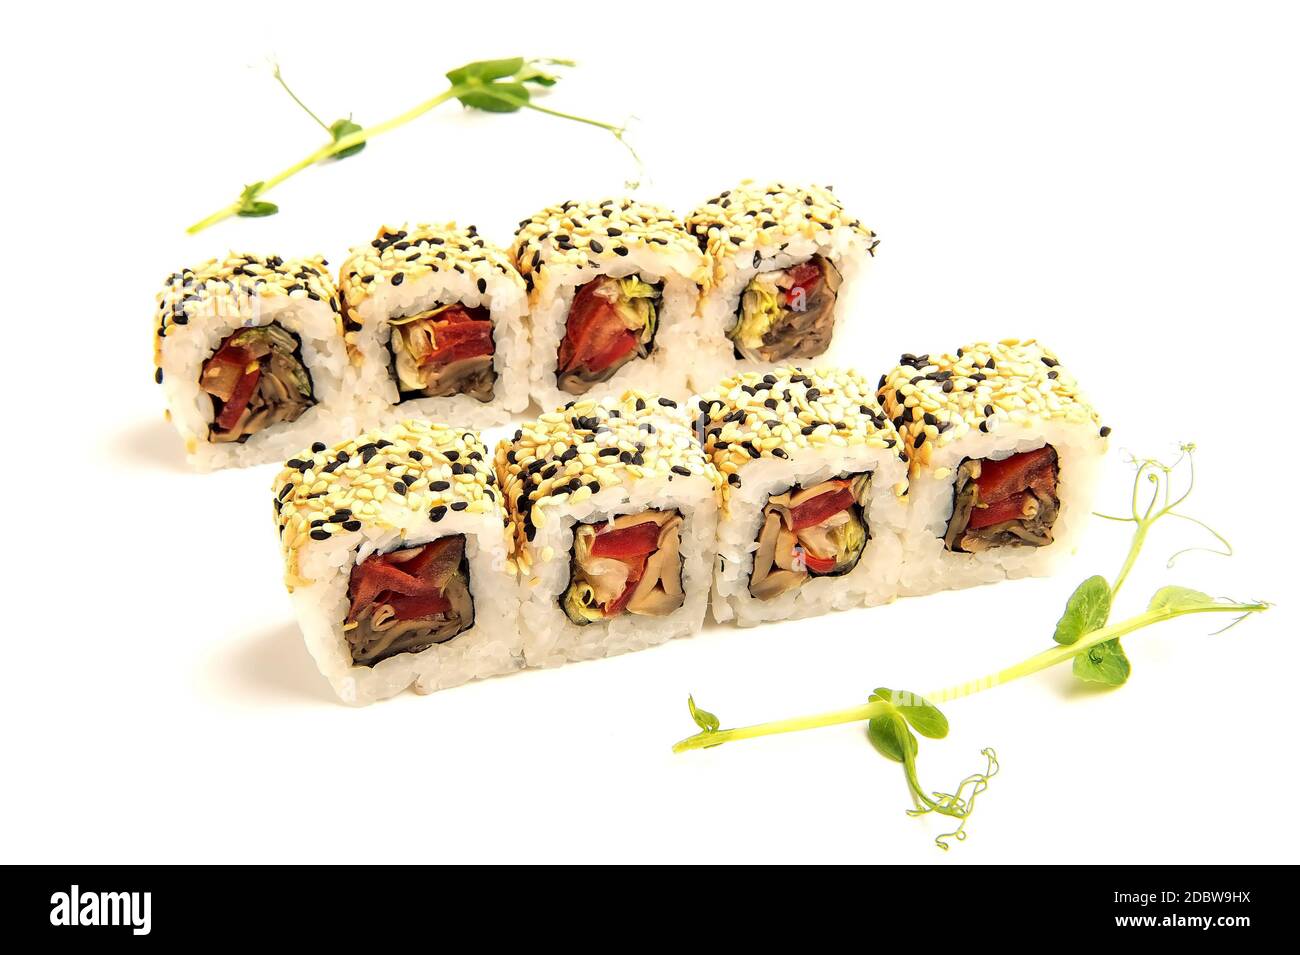 gros plan sur les baguettes en prenant une partie du rouleau de sushi le restaurant de table / manger des sushis roulent à l'aide de baguettes Banque D'Images